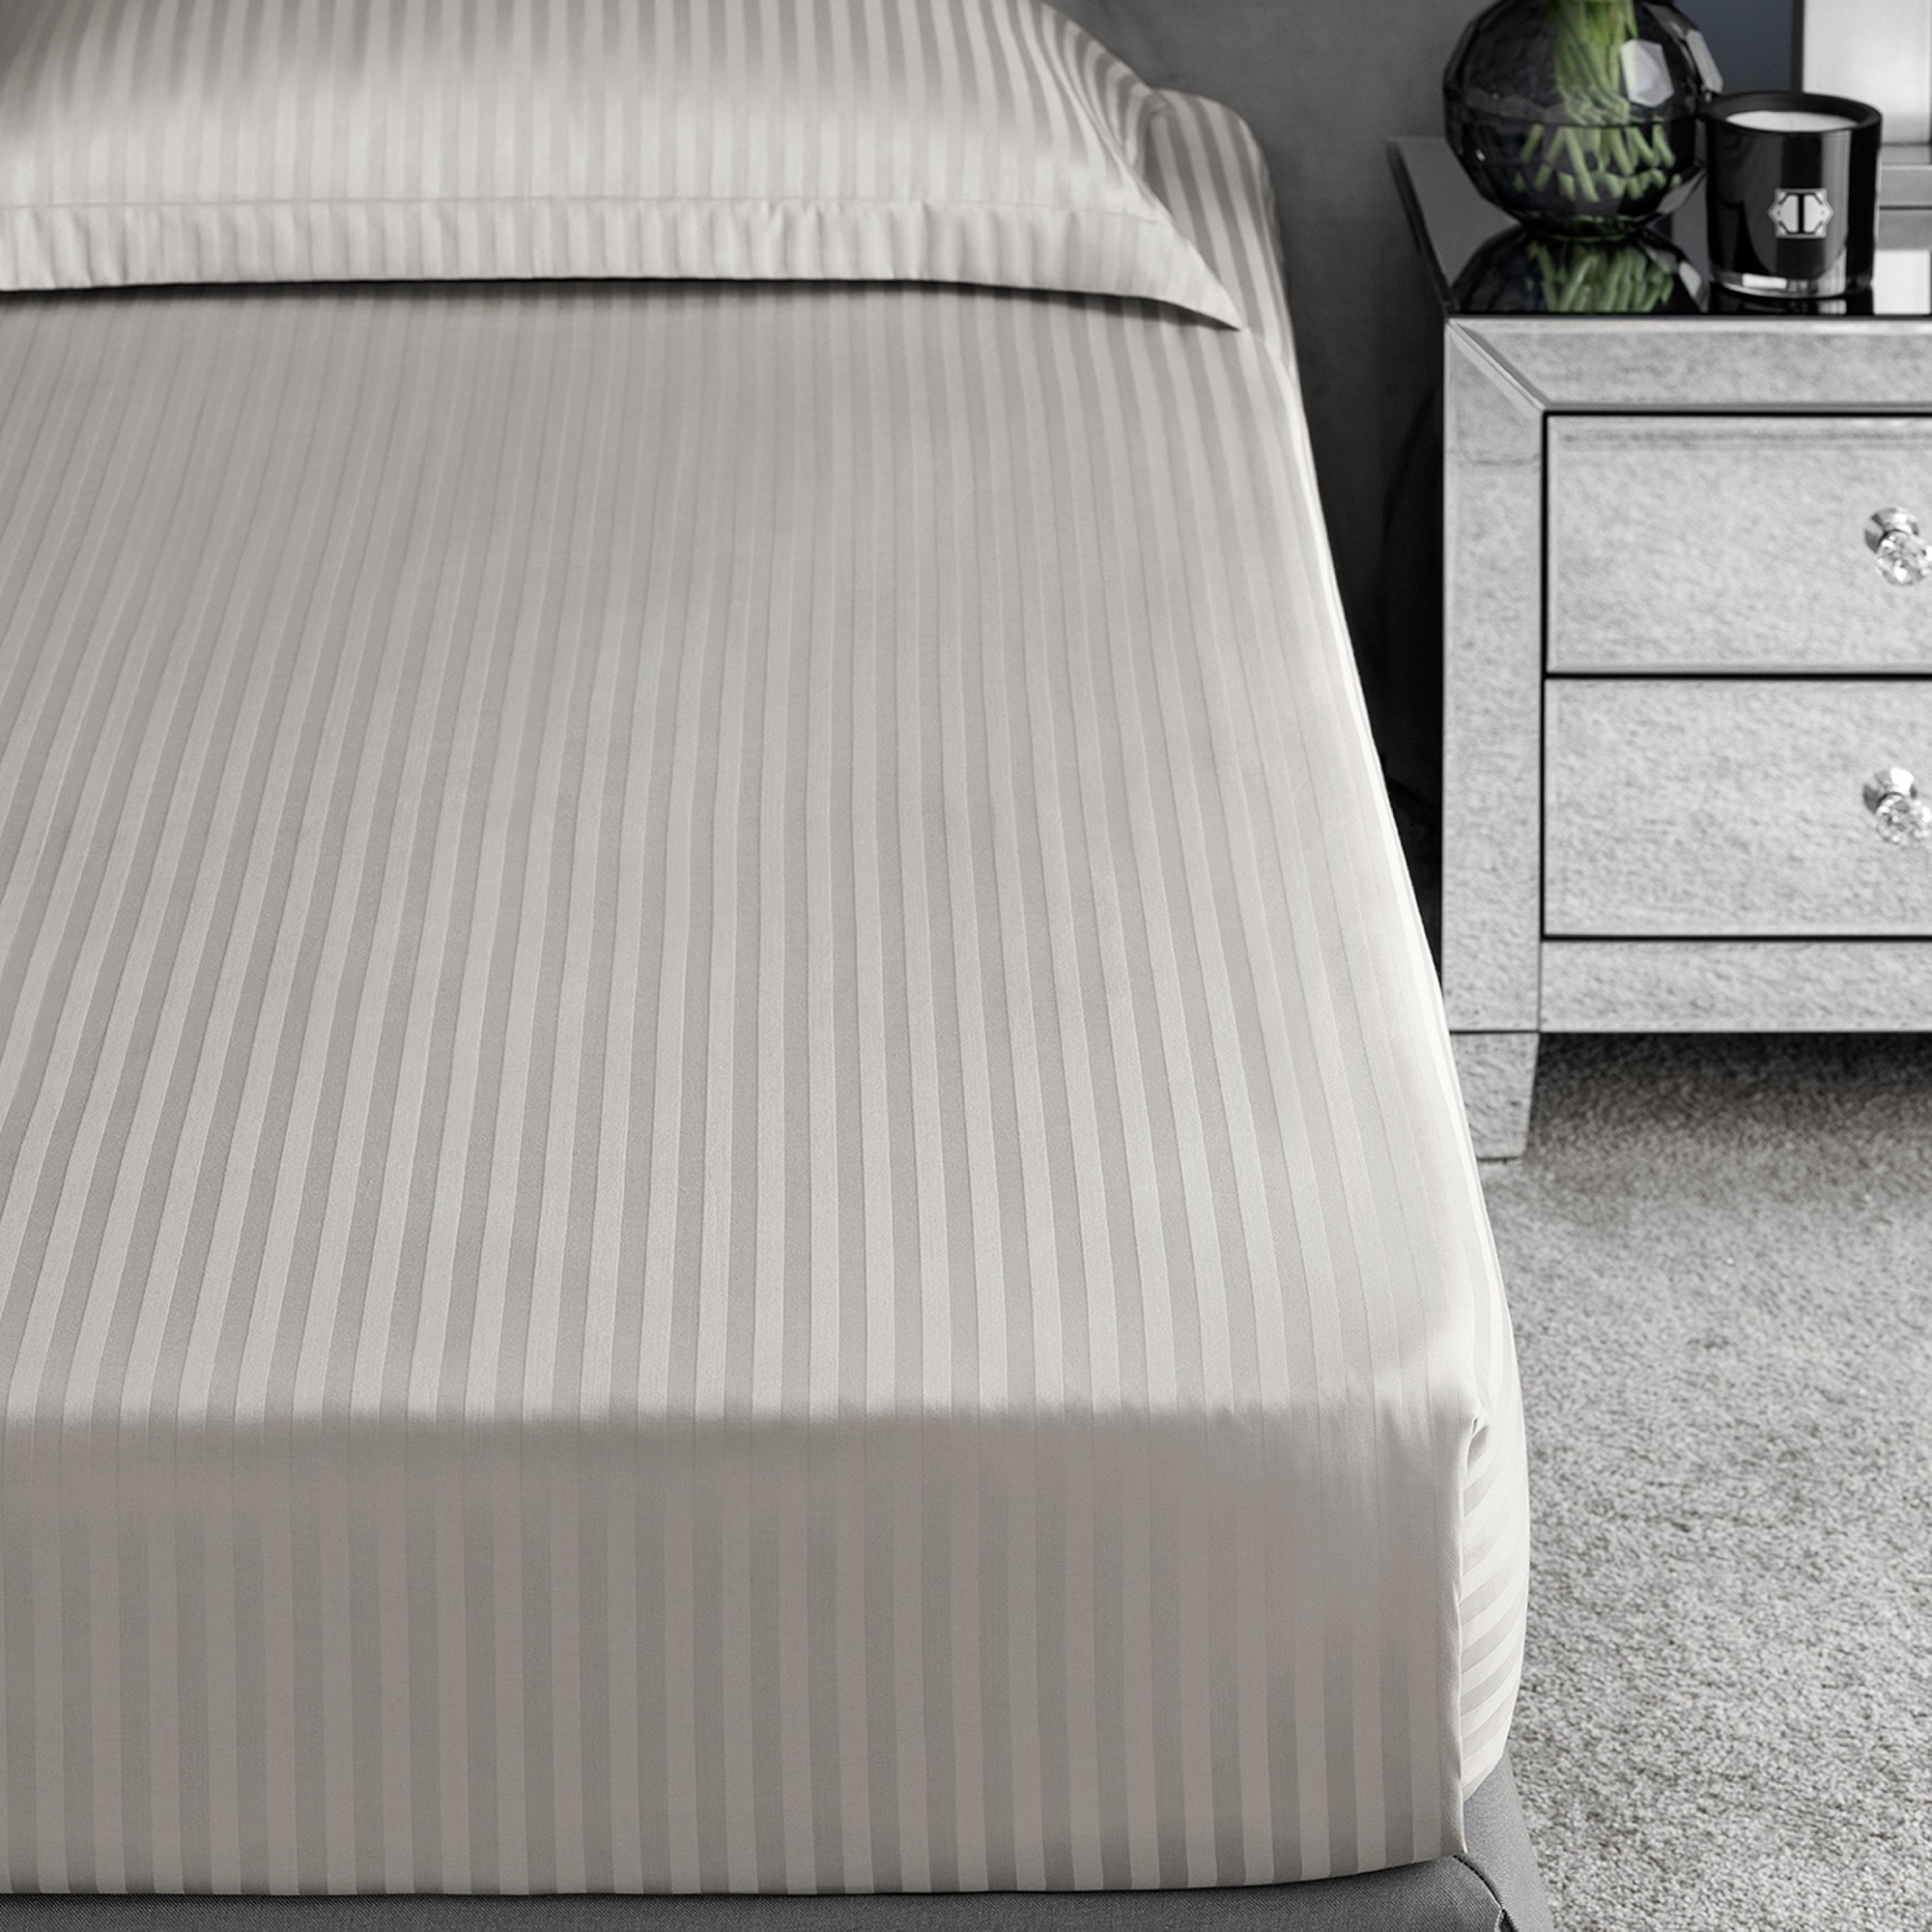 Комплект постельного белья Togas Ларье серый Двуспальный кинг сайз, размер Кинг сайз - фото 9